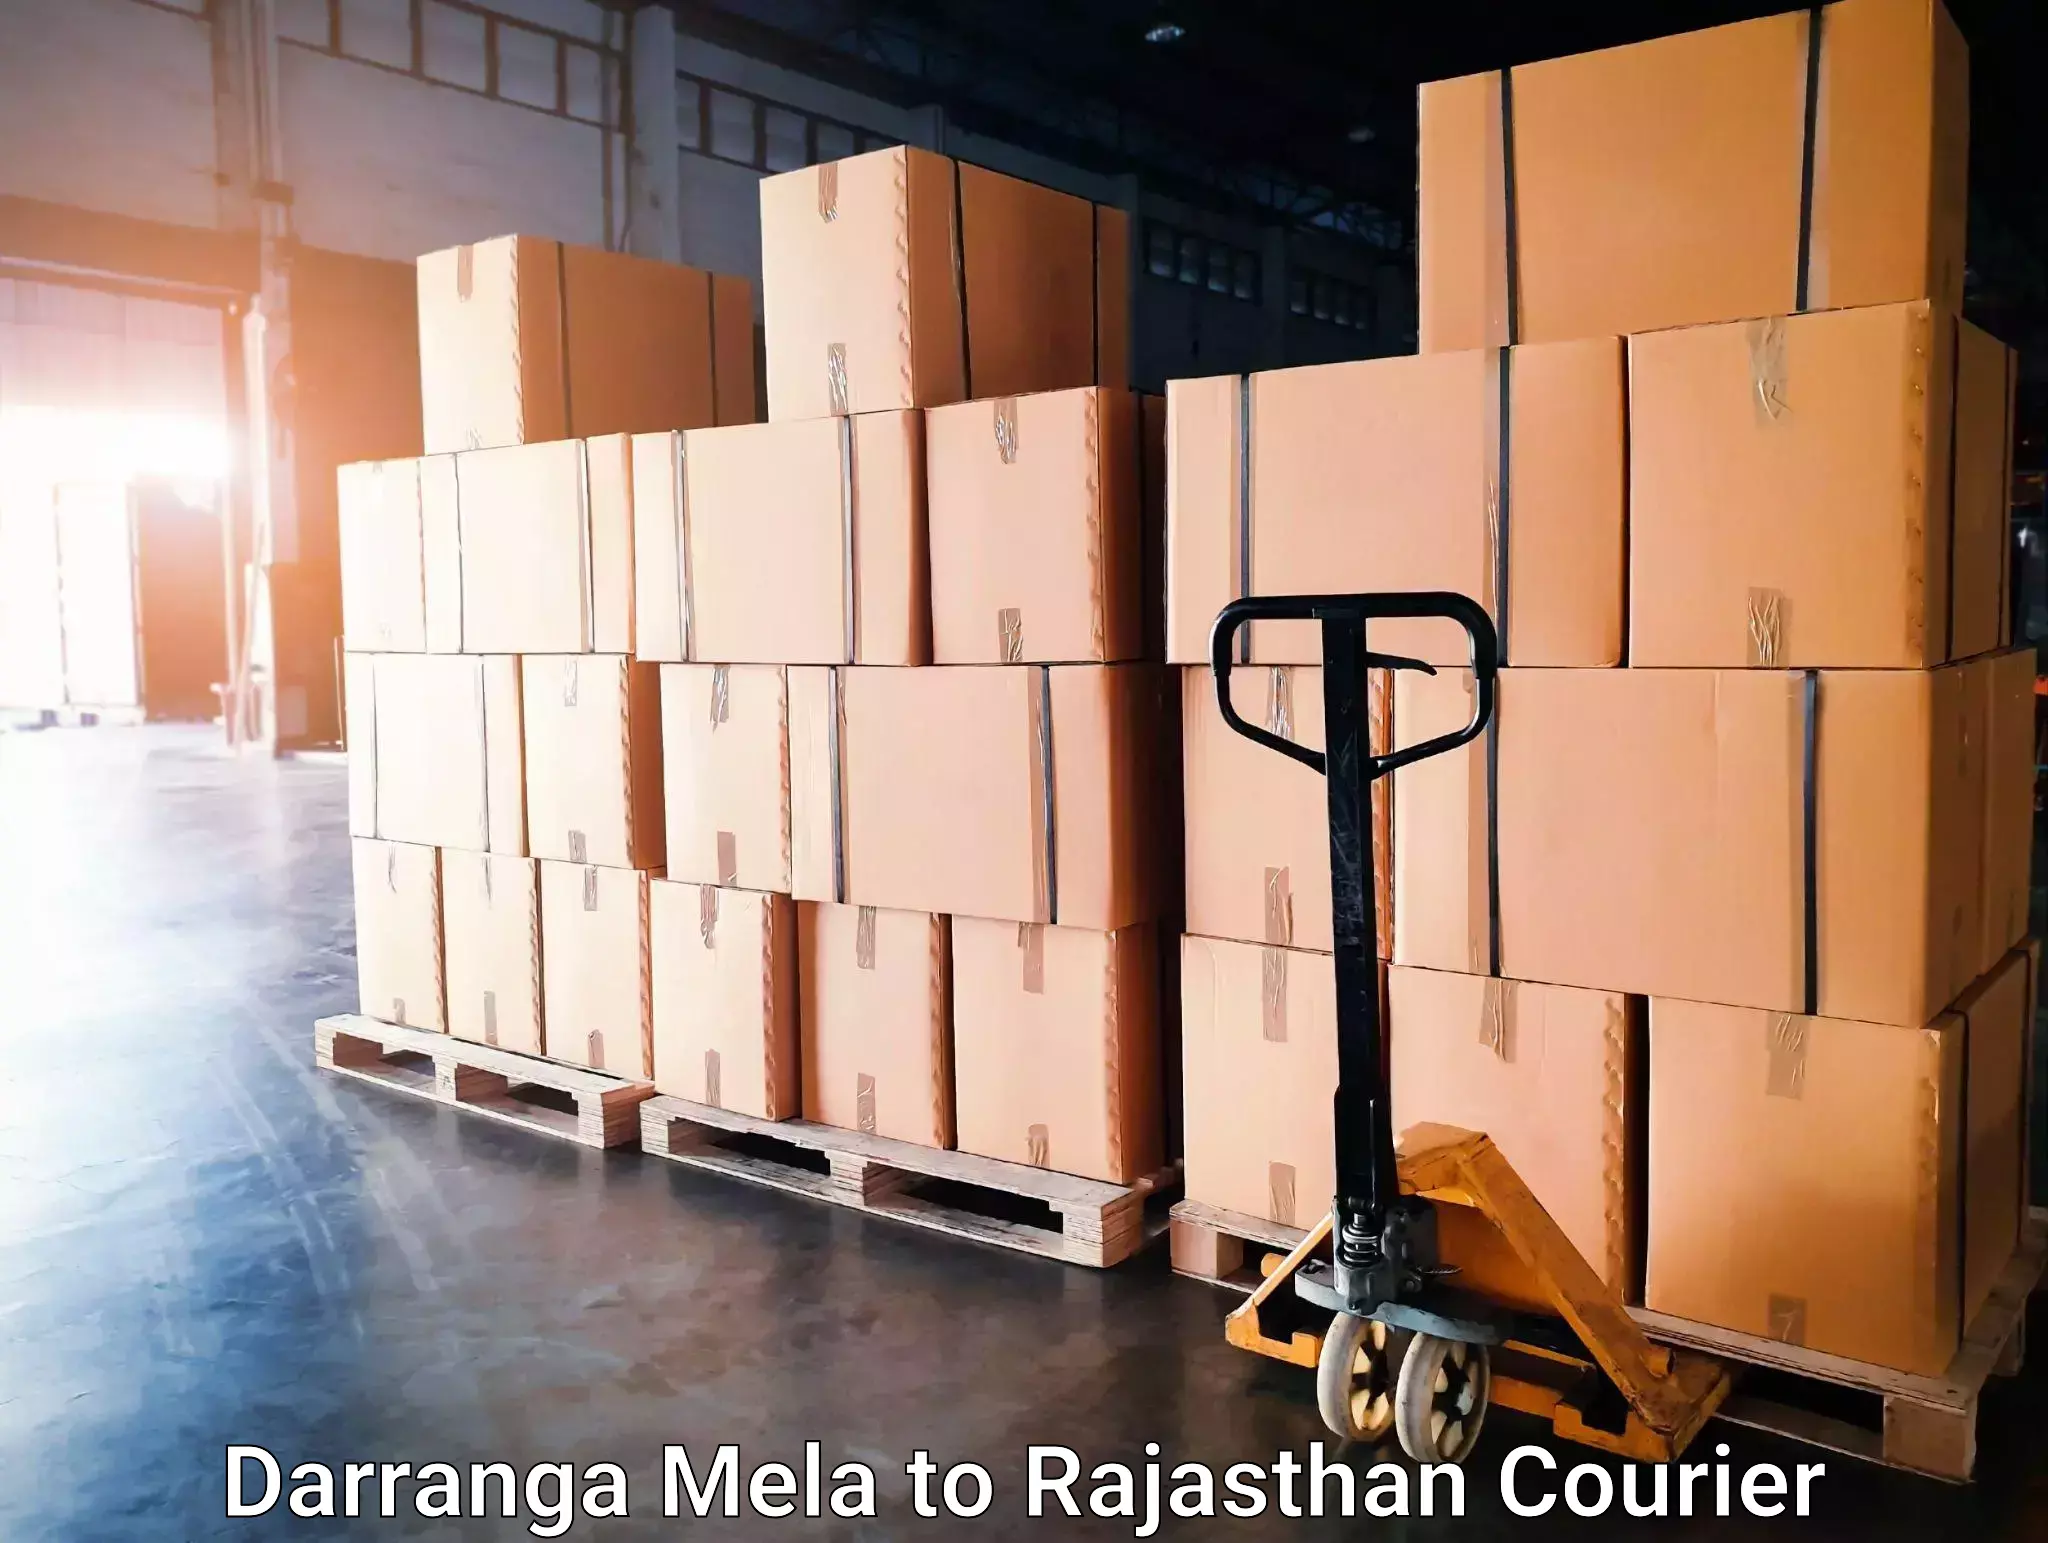 24-hour courier services Darranga Mela to Jaisalmer